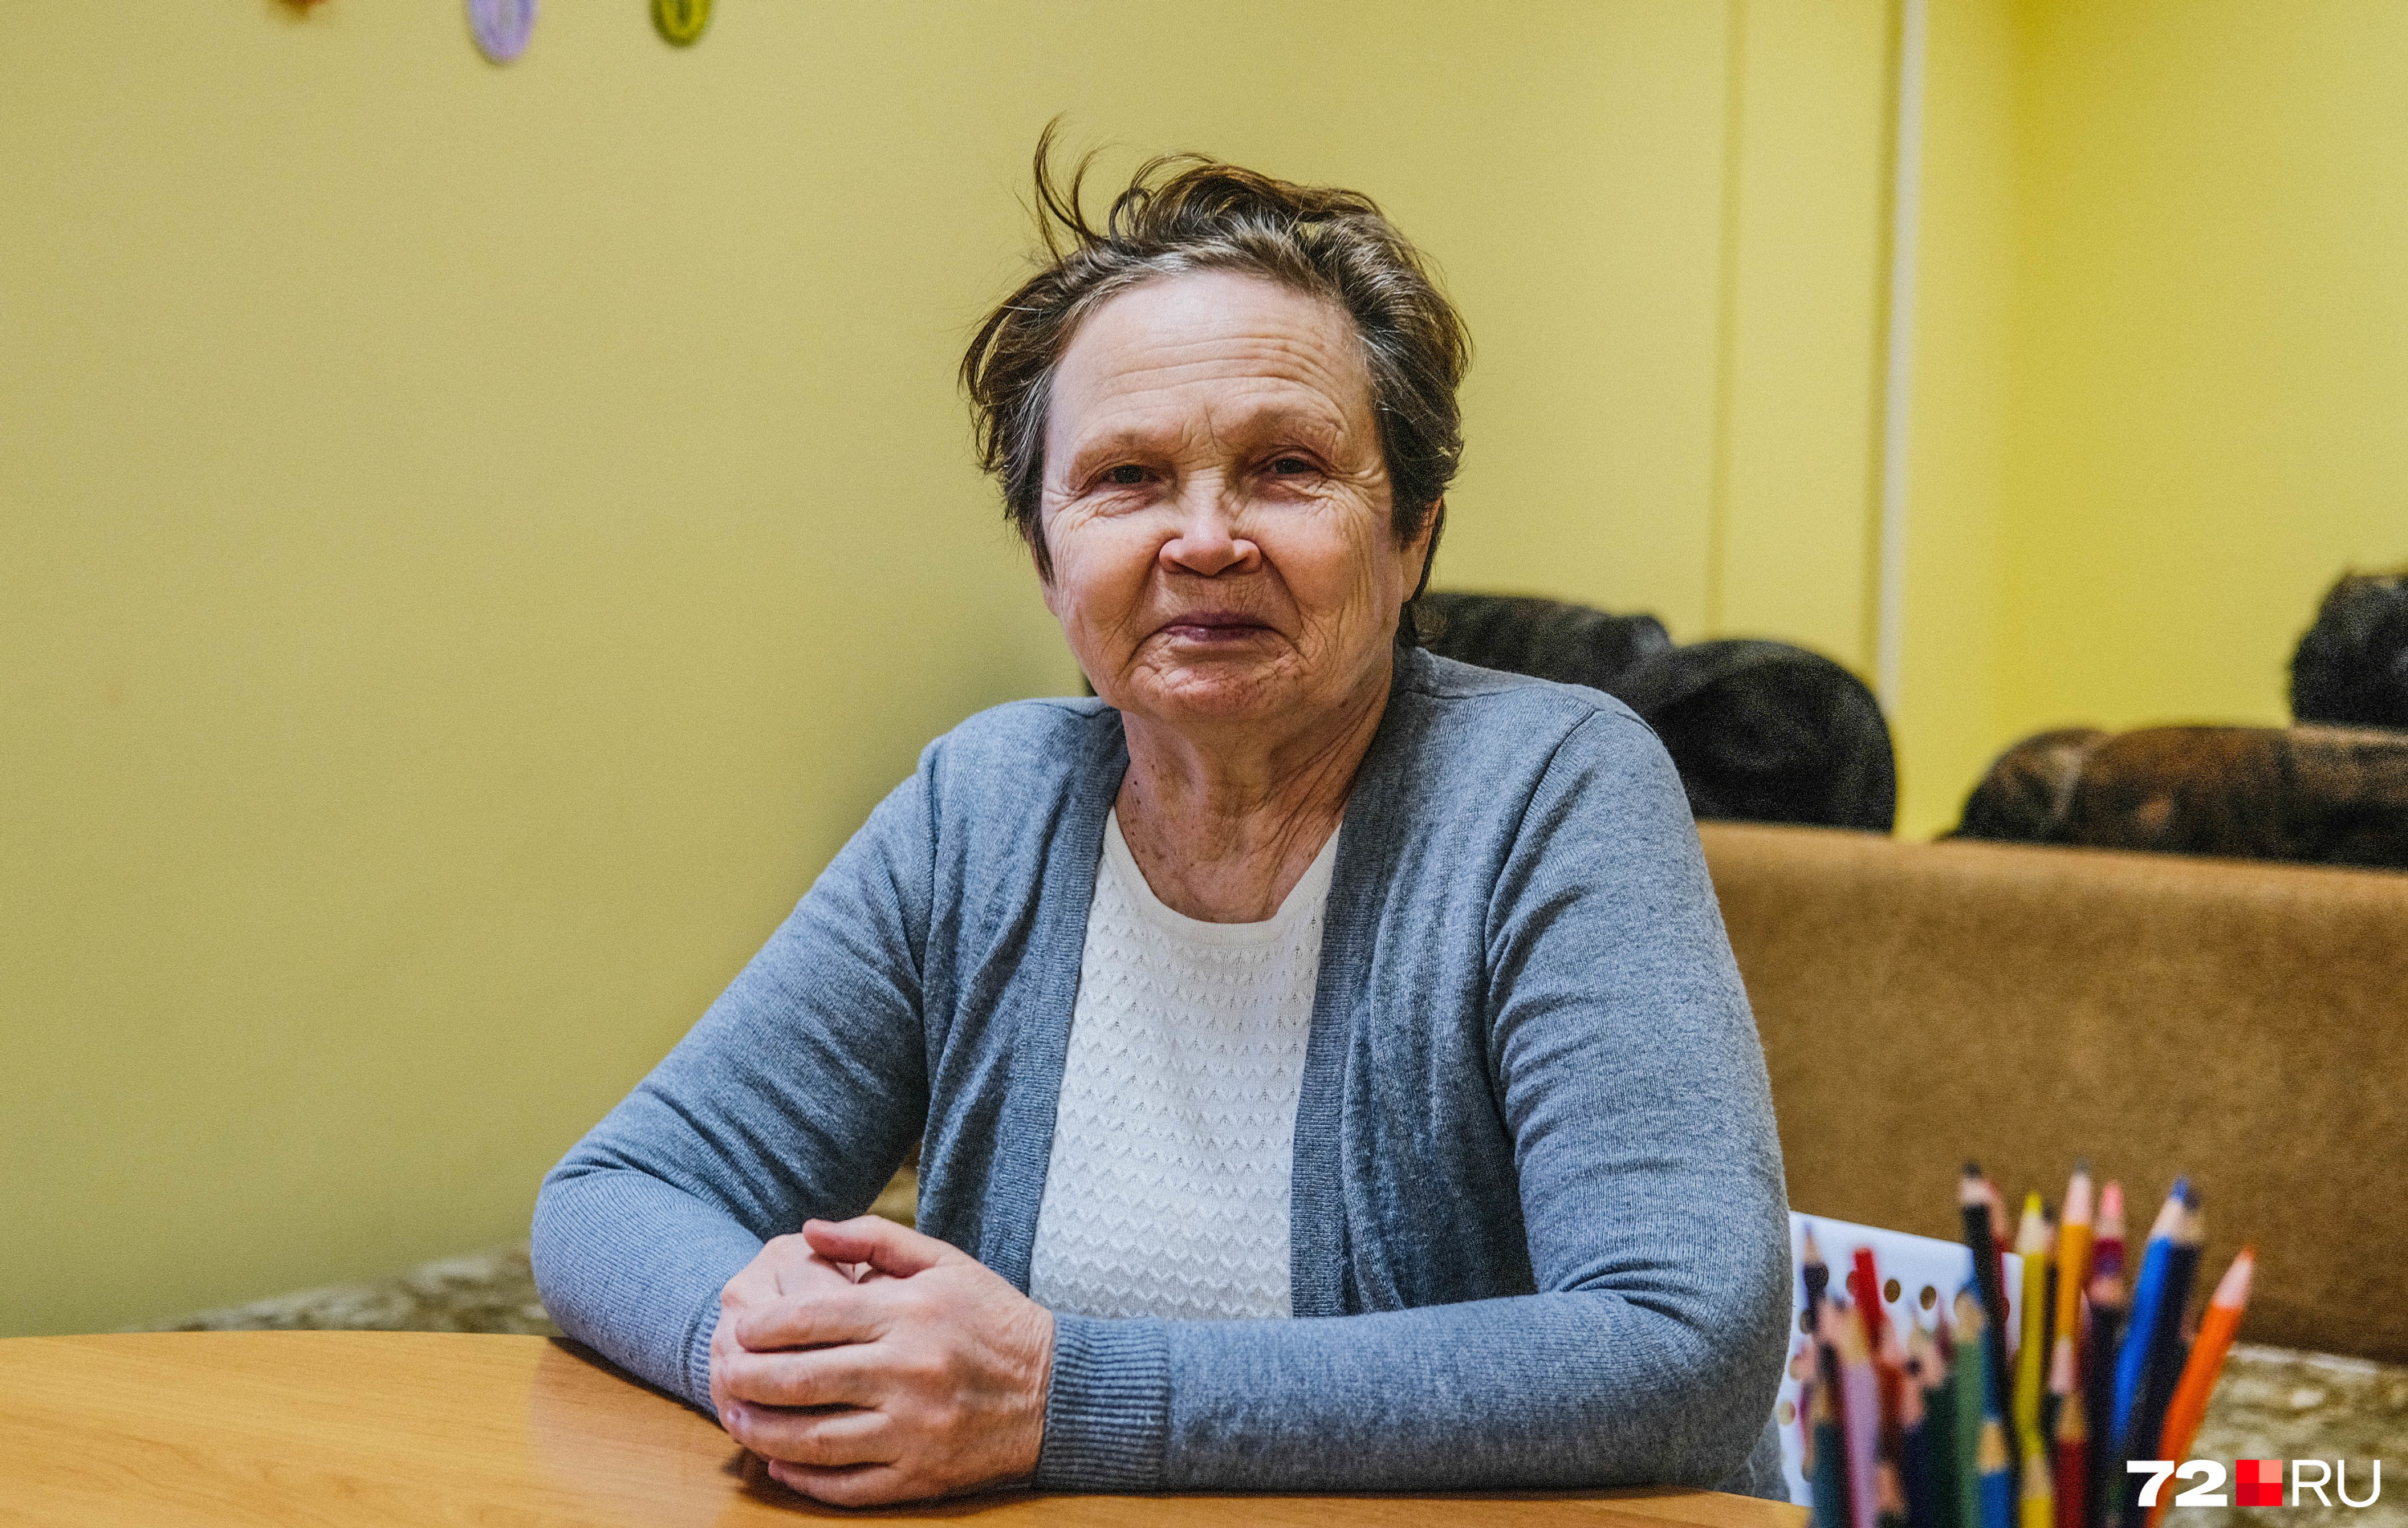 Работа екатеринбург вакансии для женщин пенсионеров свежие